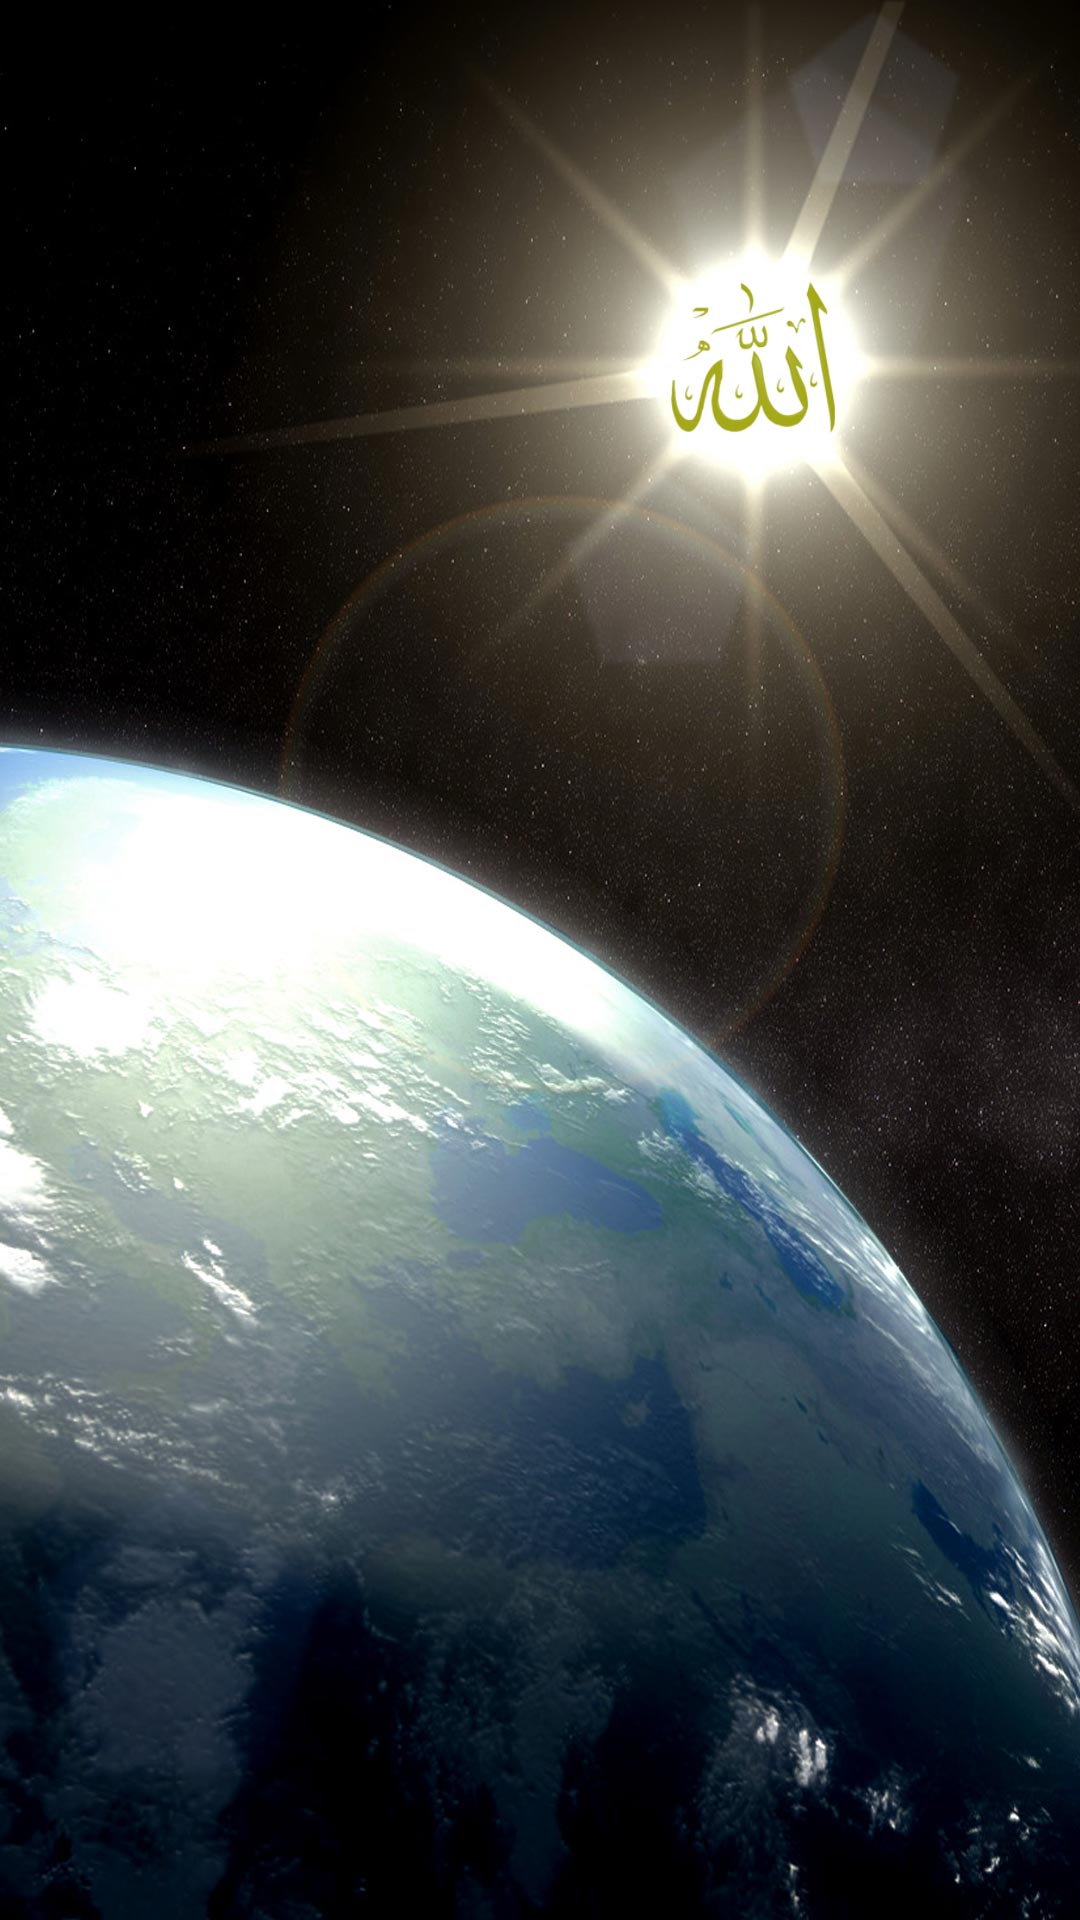 gambar untuk fond d'écran hp,atmosphère,cosmos,terre,planète,objet astronomique